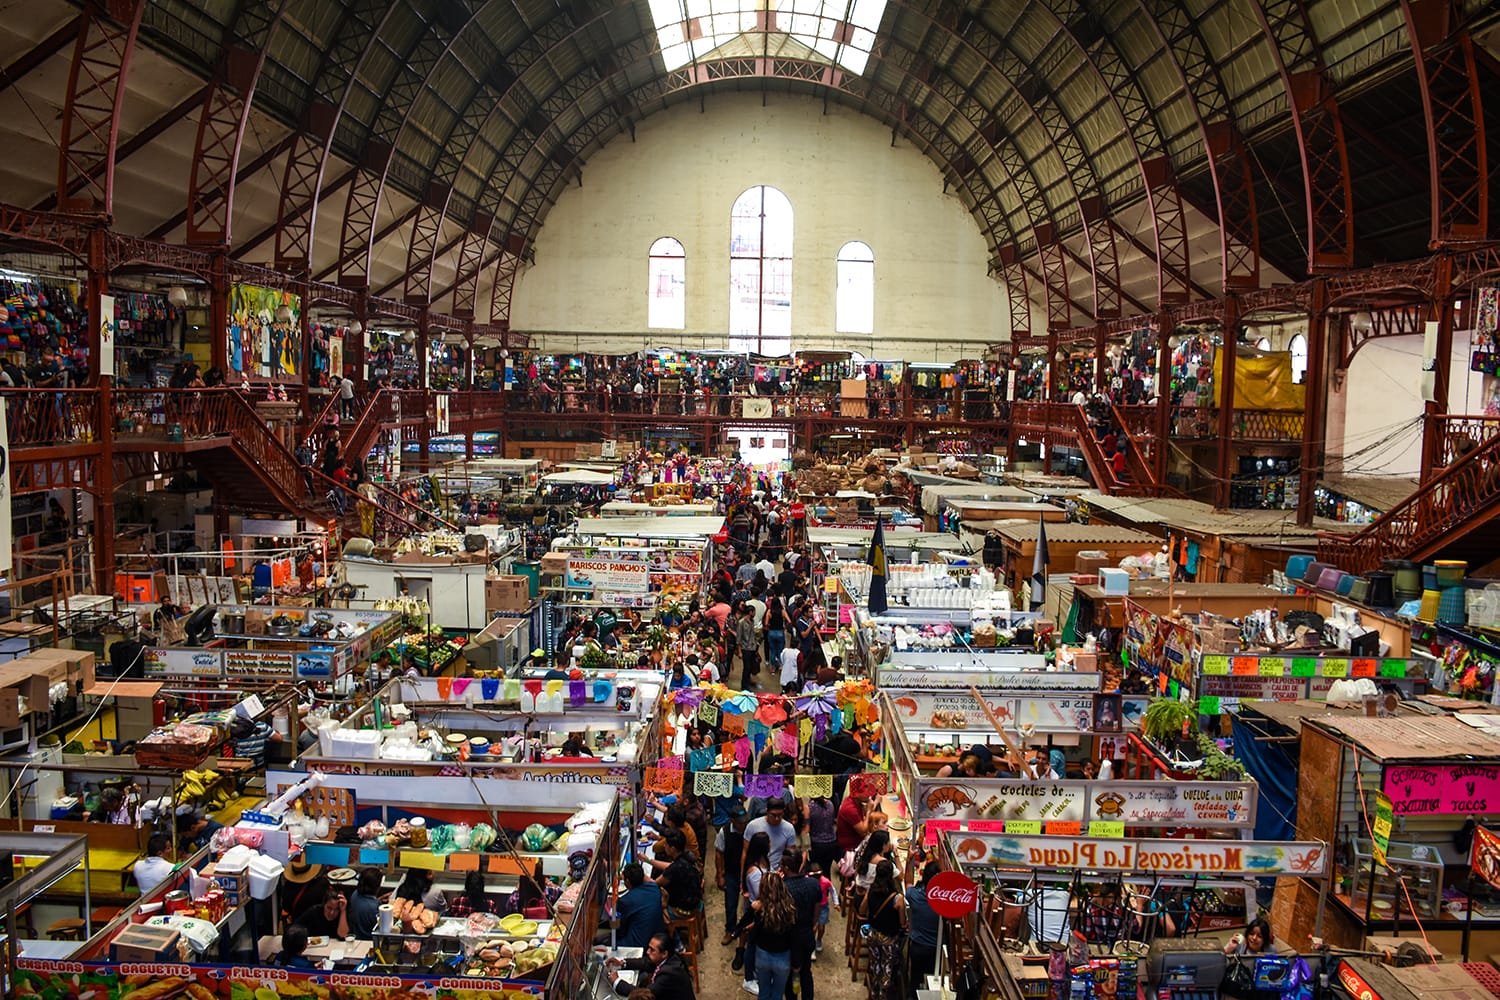 The interior of the hidalgo market in the city of Guanajuato, Mexico